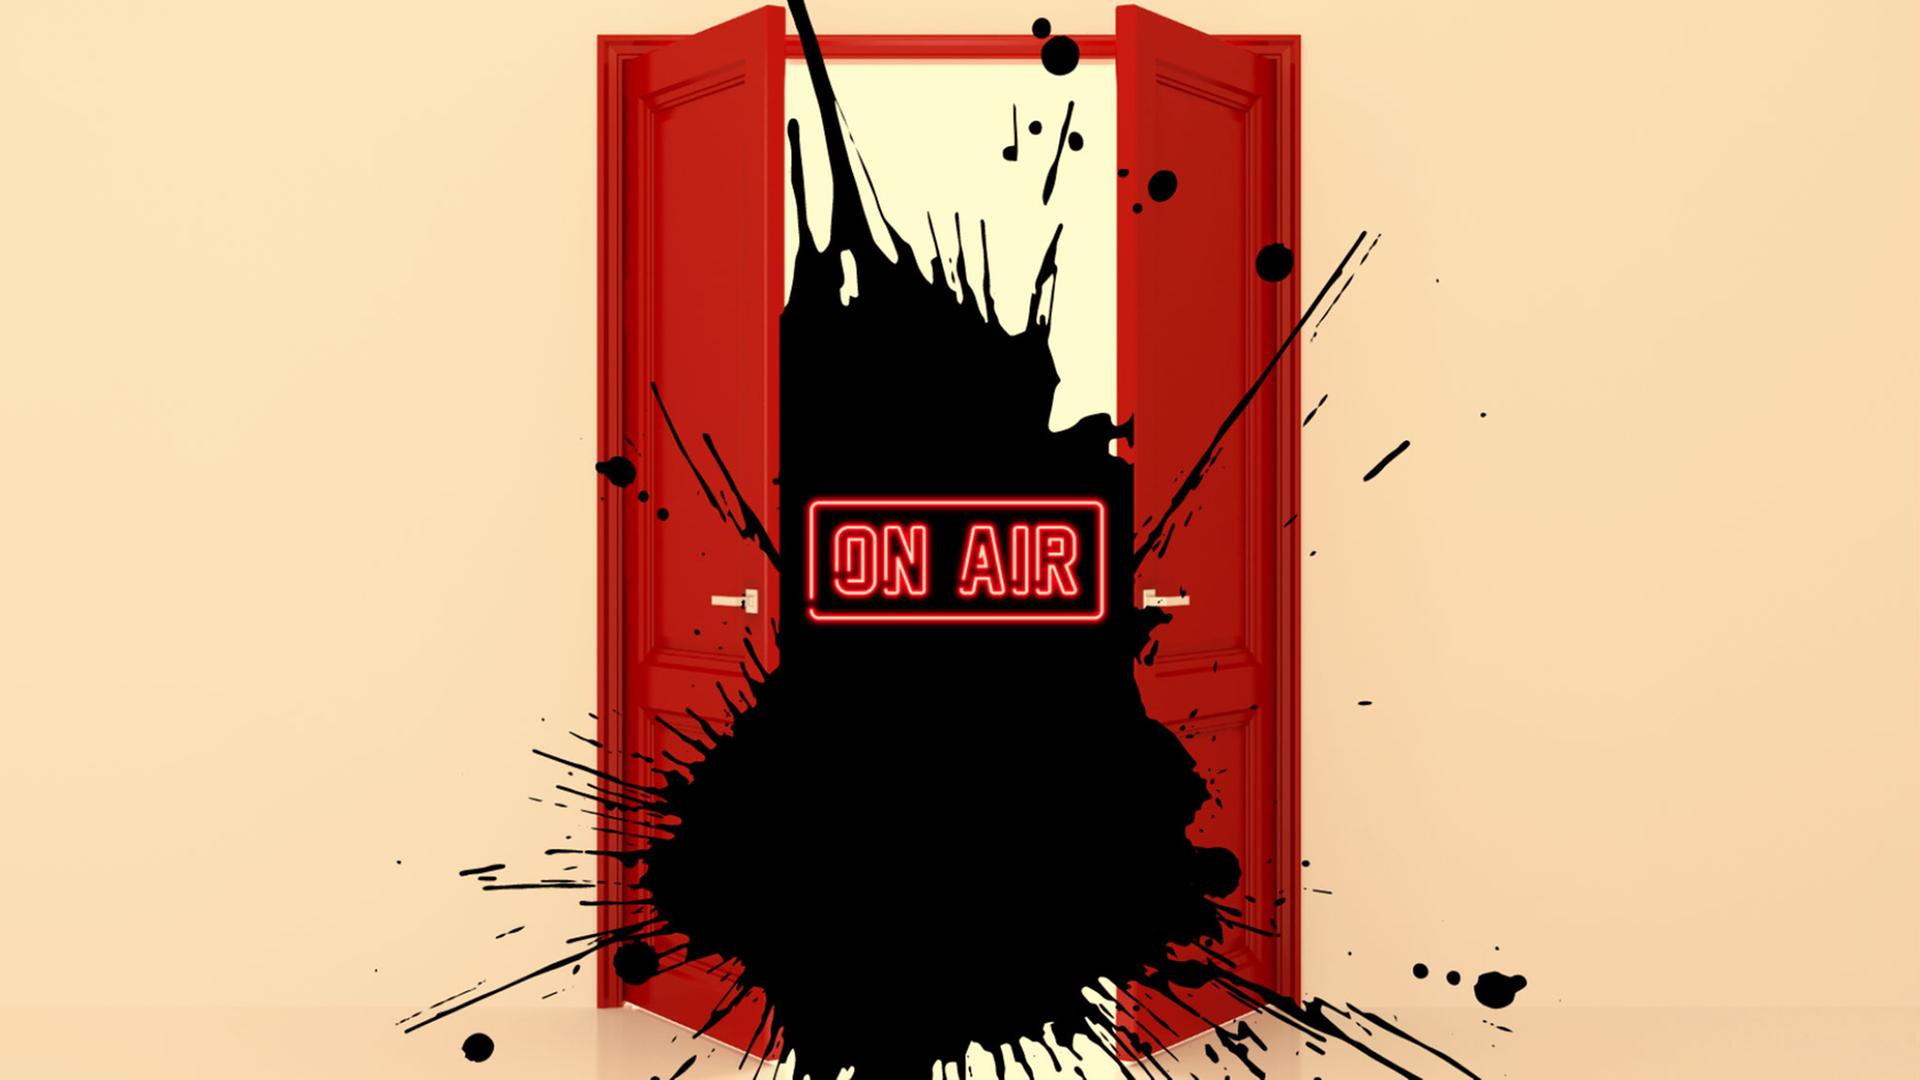 Das lineare Radio nimmt in "Die rote Tür" bei jeder Ausstrahlung neue Realitätspartikel auf. Zu sehen: Eine Comic-Zeichnung - Rote Türflügel sind halb geöffnet, dazwischen ein schwarzer Klecks mit einer roten Schrift darüber "On Air"